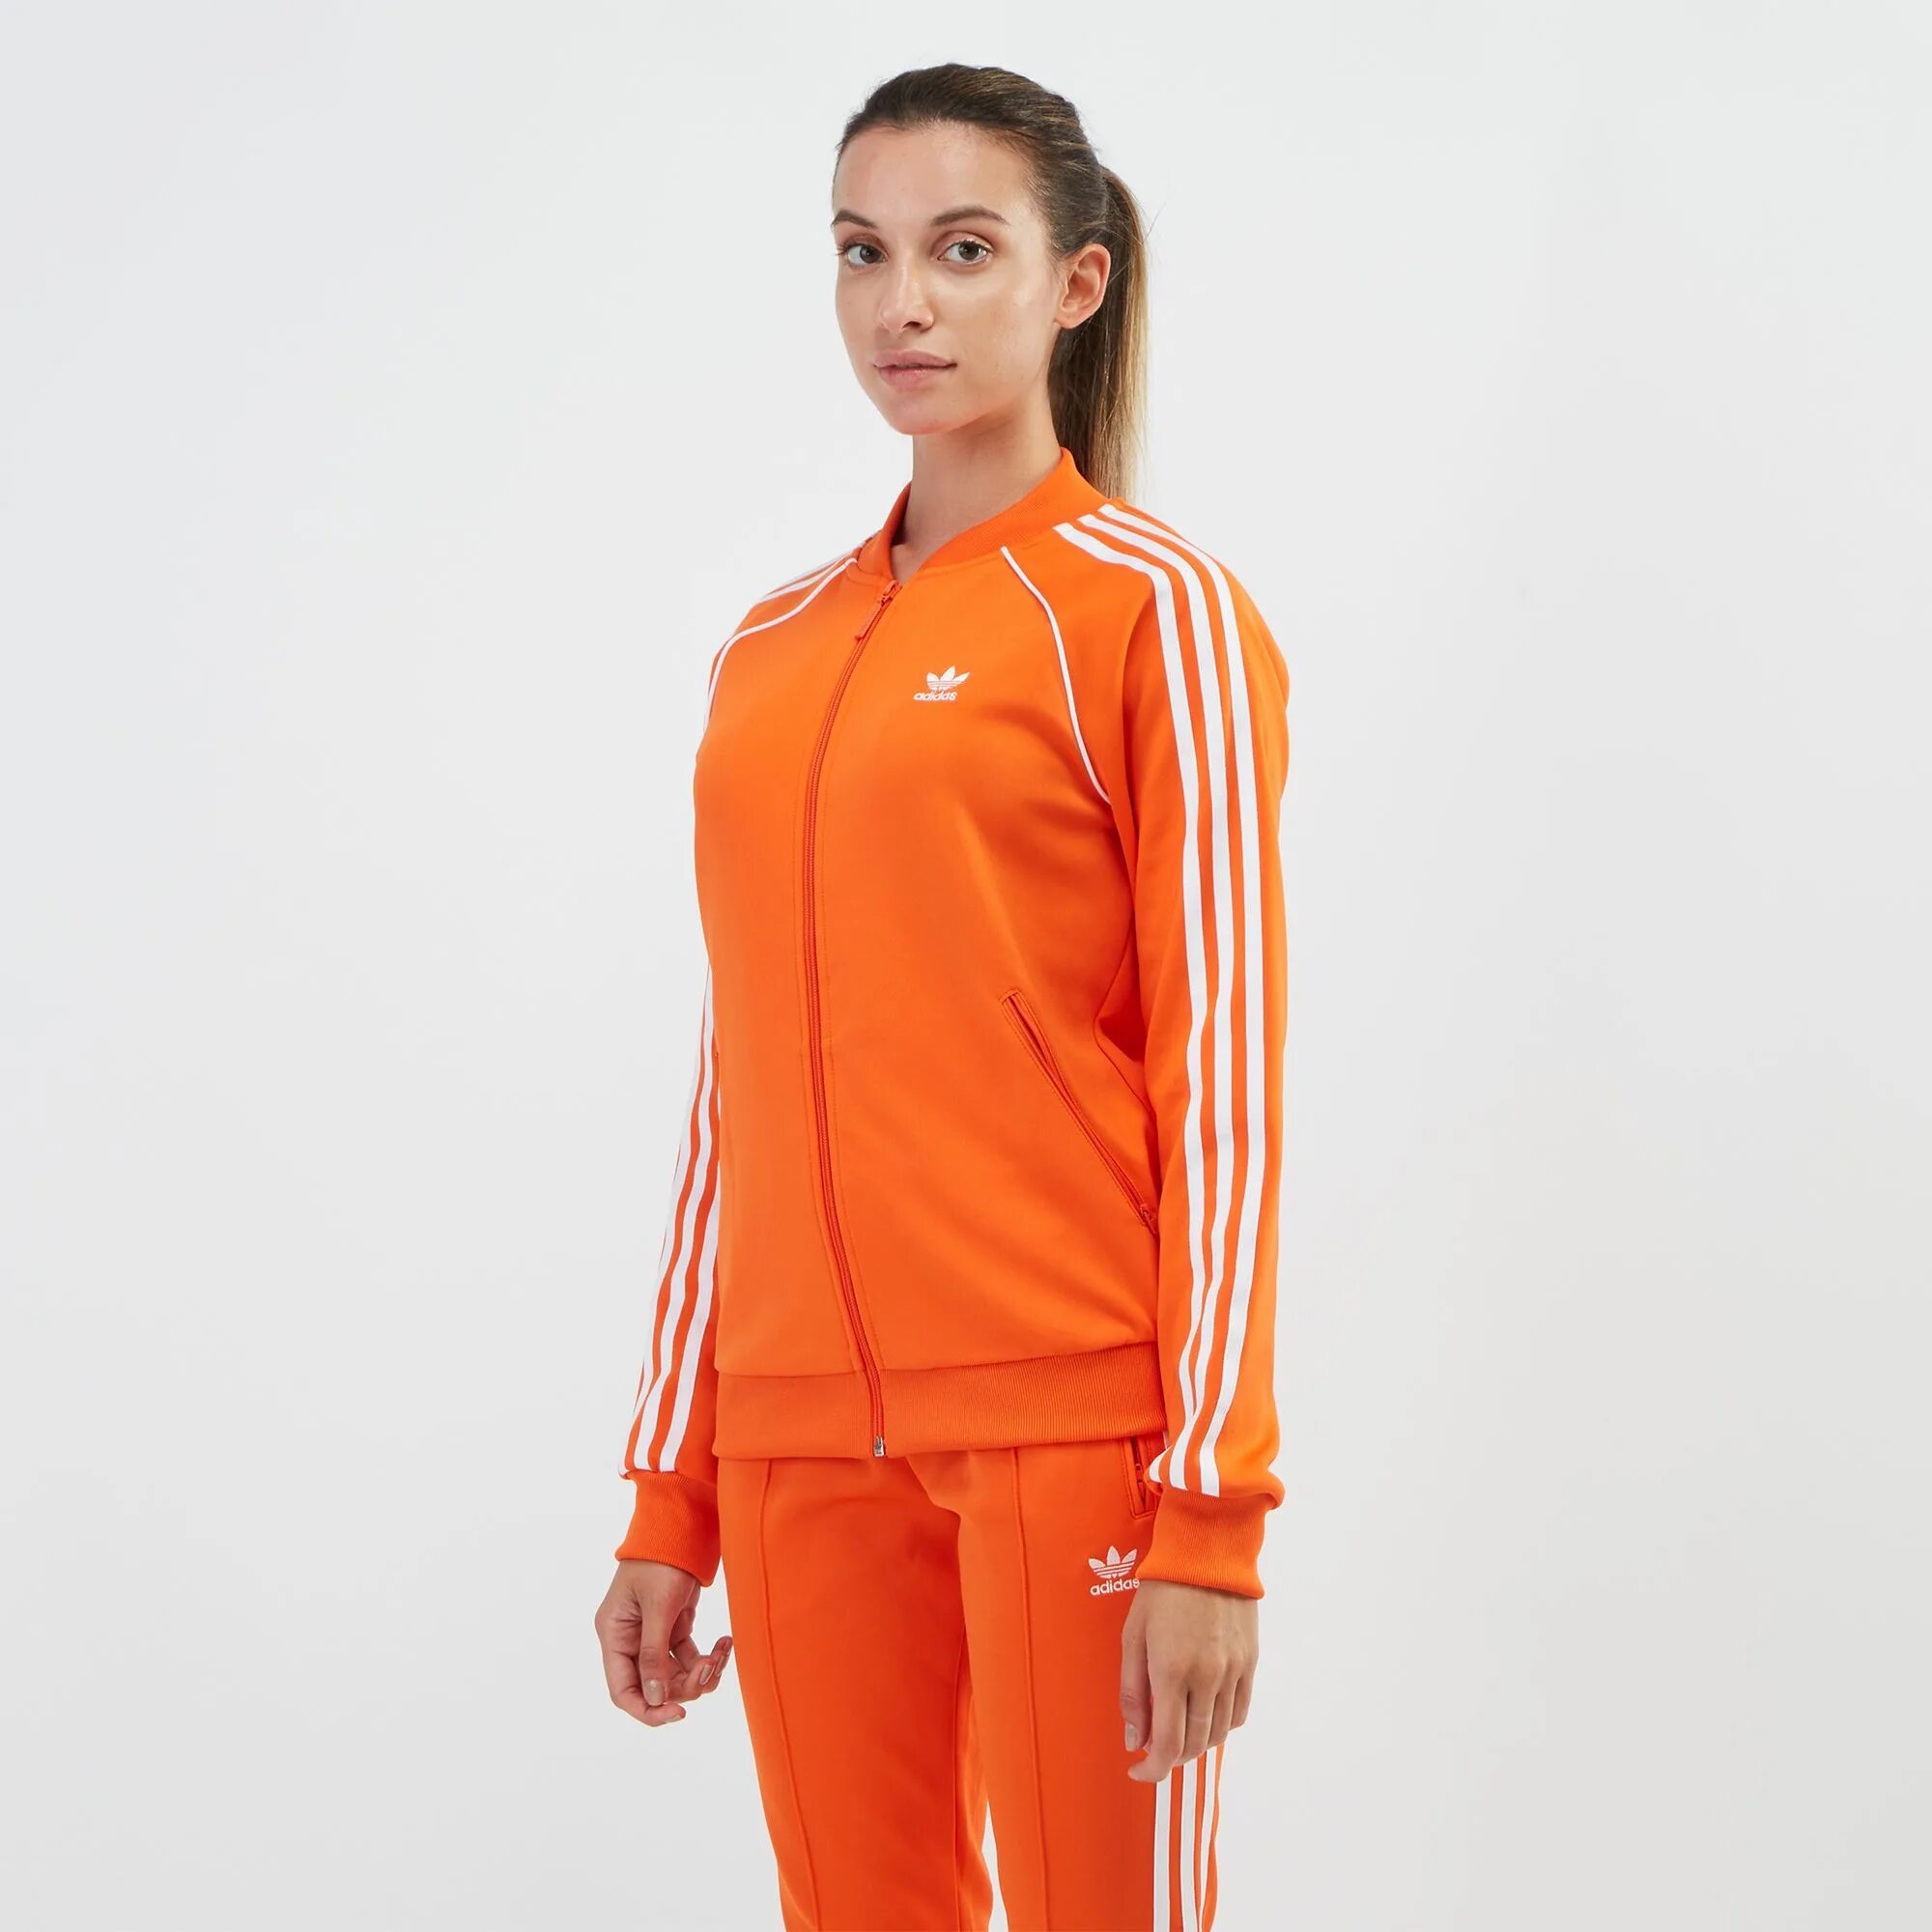 Оранжевый спортивный костюм. Костюм адидас SST оранжевый. Adidas Originals - Orange Tracksuit. Оранжевый адидас костюм жакет. Адидас оранжевые.